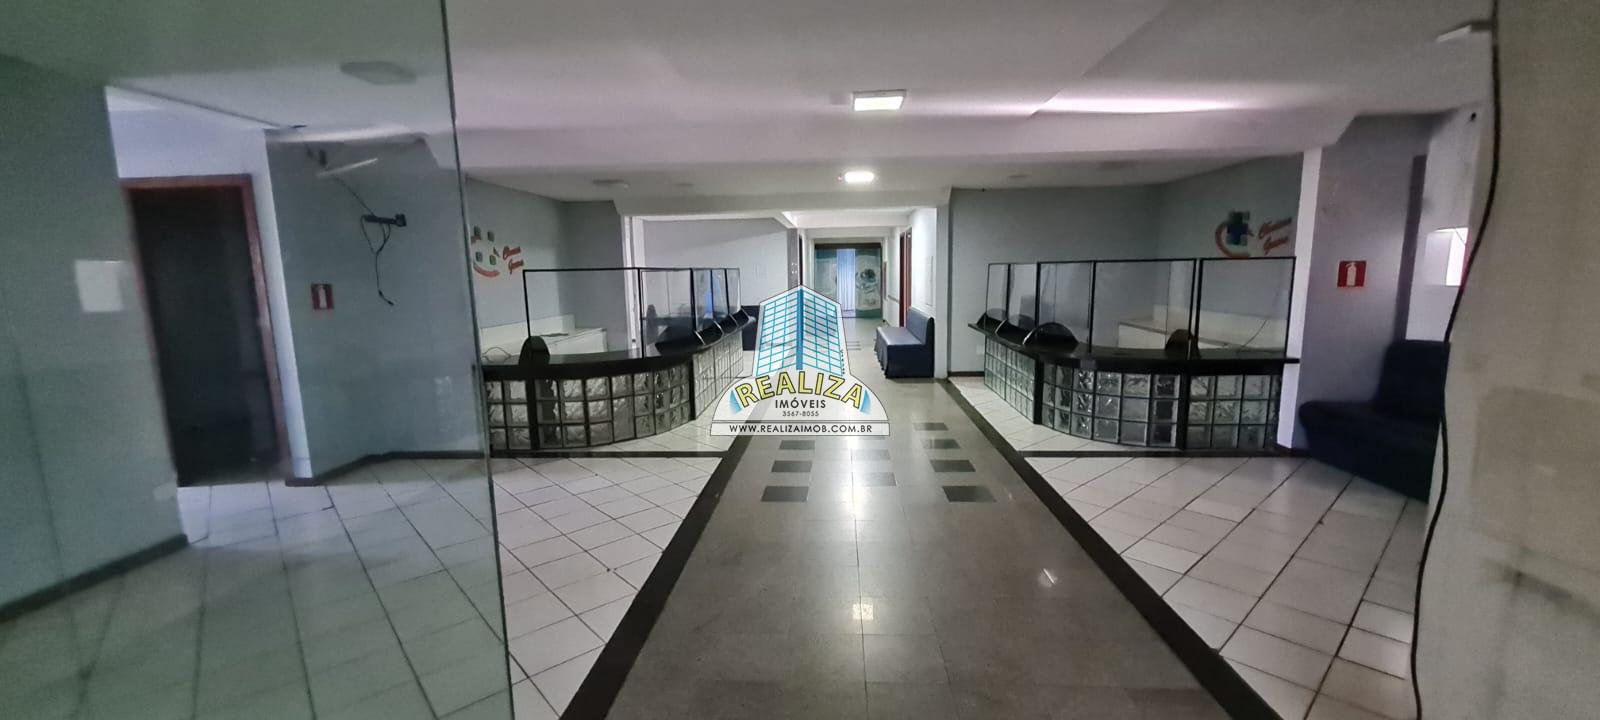 Centro Clínico Office Center 15 Salas Guara QE 11  